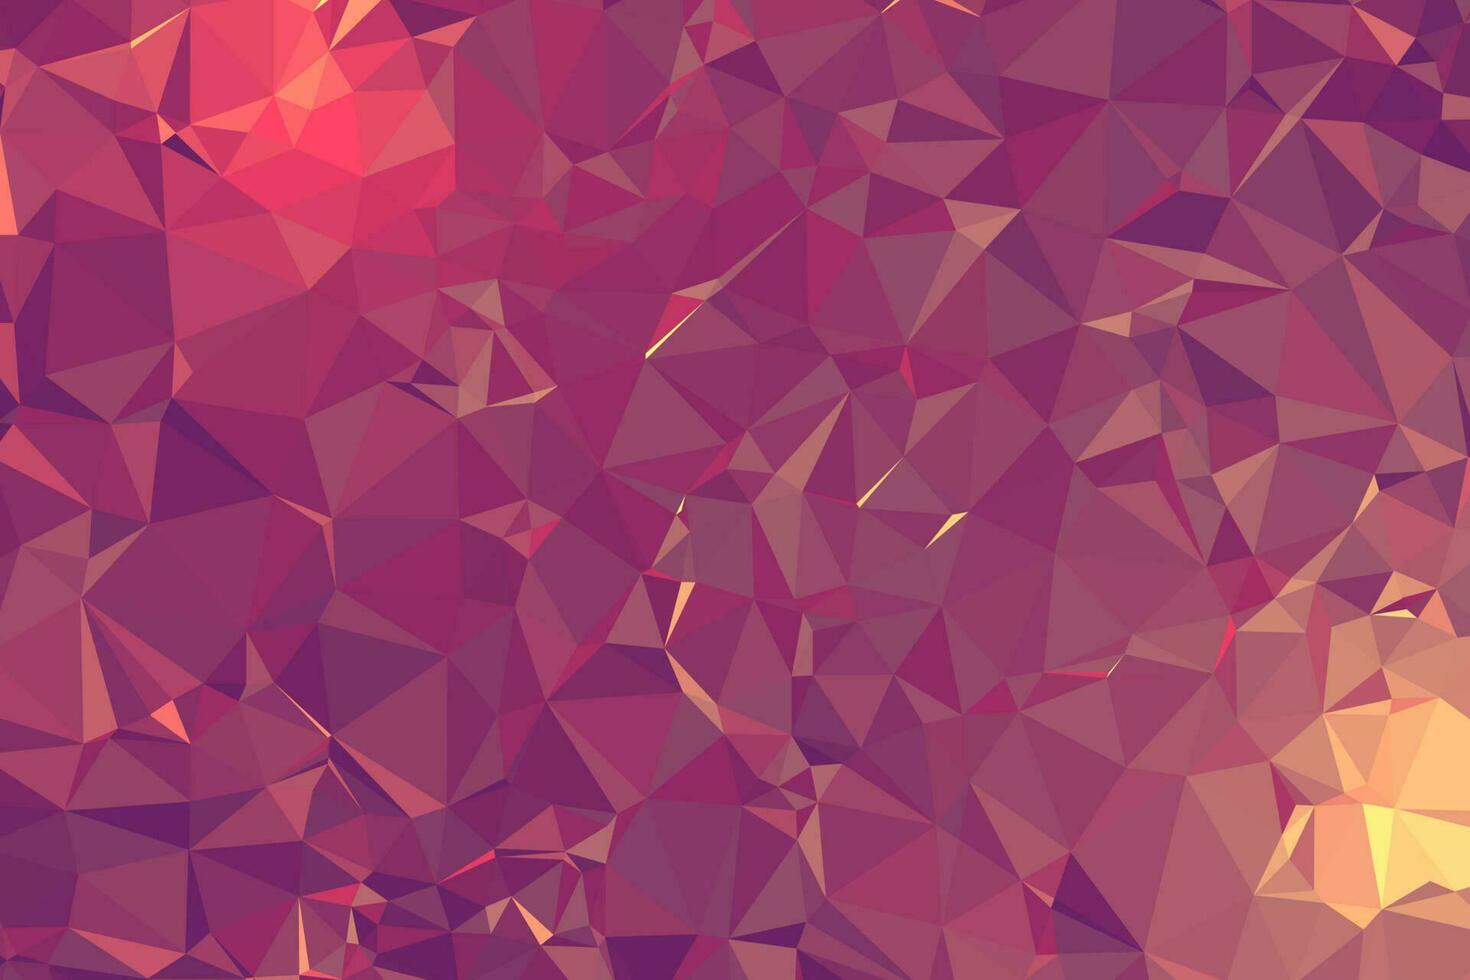 abstrakter strukturierter rosa polygonaler Hintergrund. Low-Poly-Geometrie bestehend aus Dreiecken unterschiedlicher Größe und Farbe. verwendung in design cover, präsentation, visitenkarte oder website. vektor